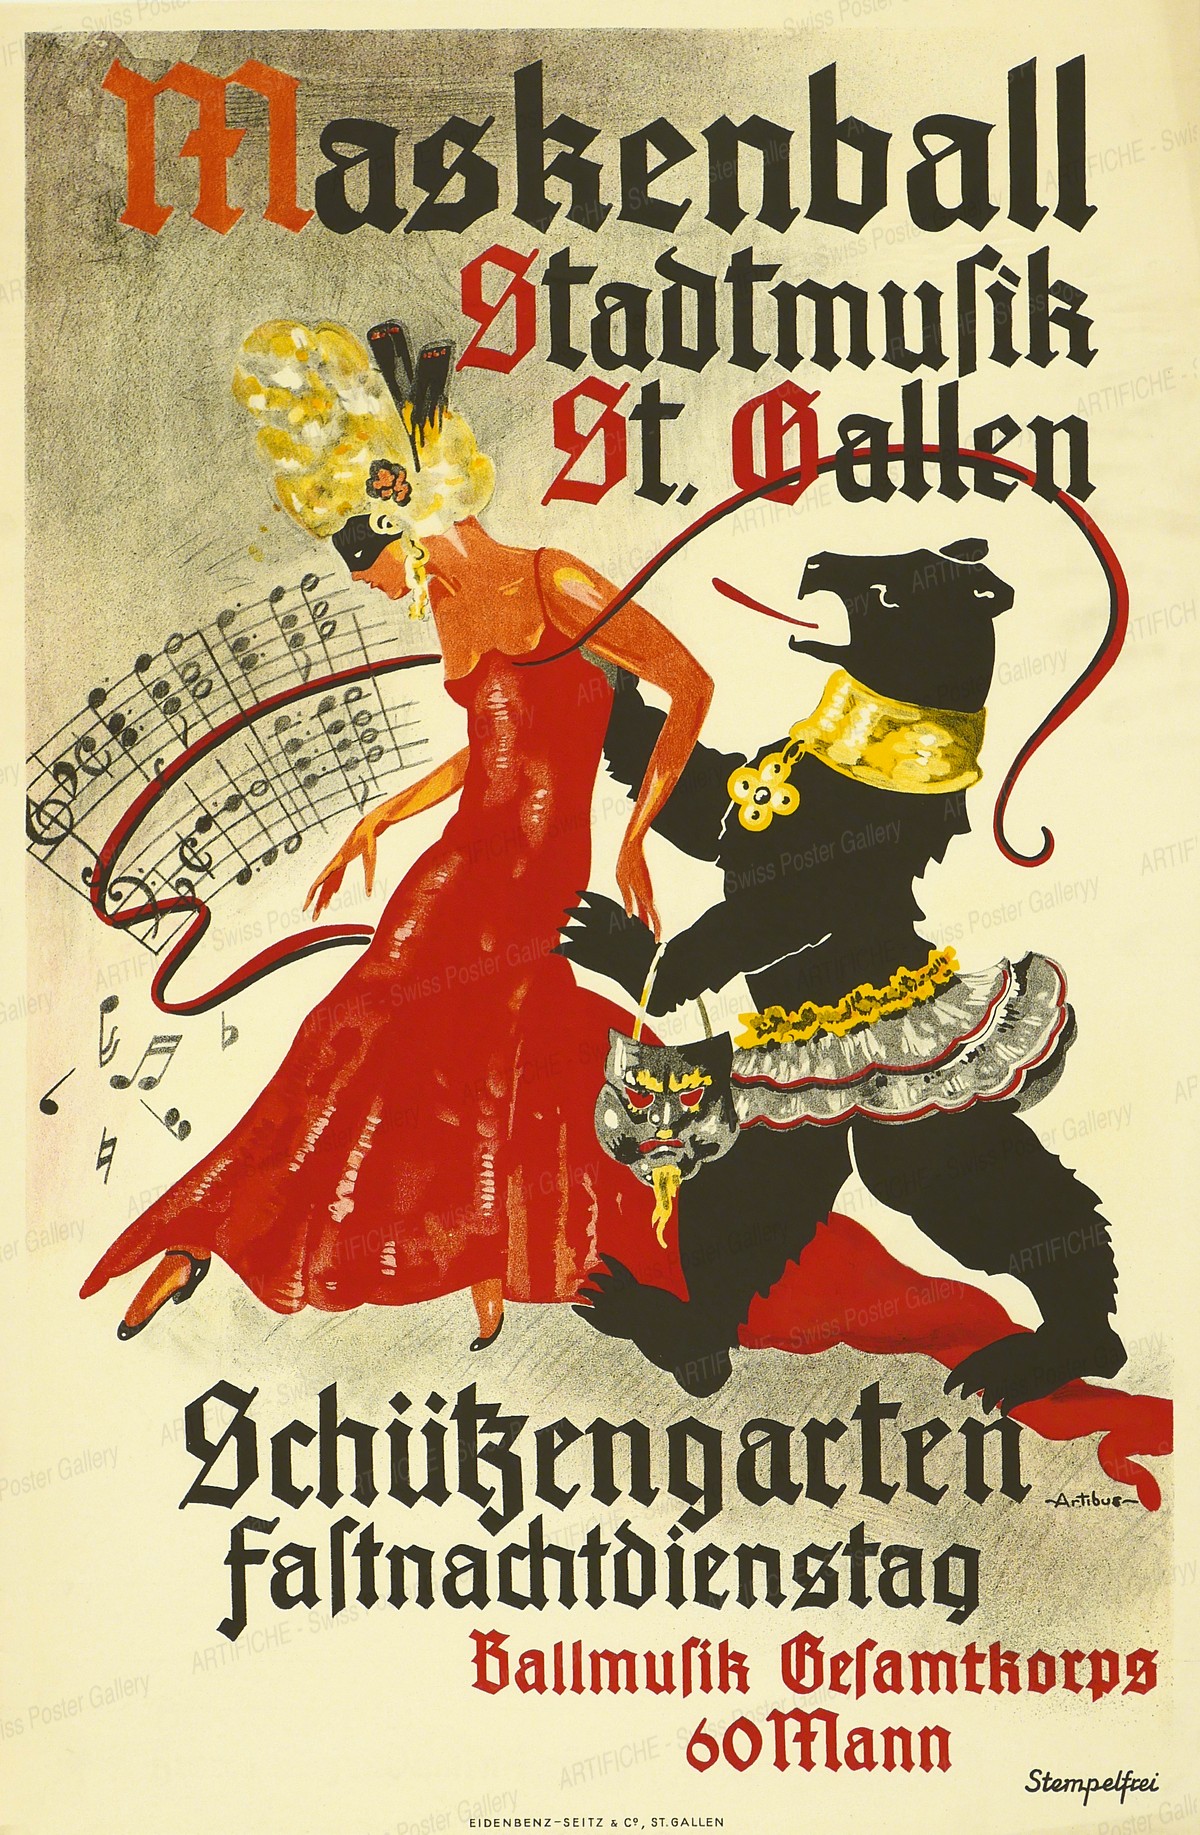 Masquerade ball Stadtmusik St. Gallen – Schützengarten Carnival Tuesday, Artibus